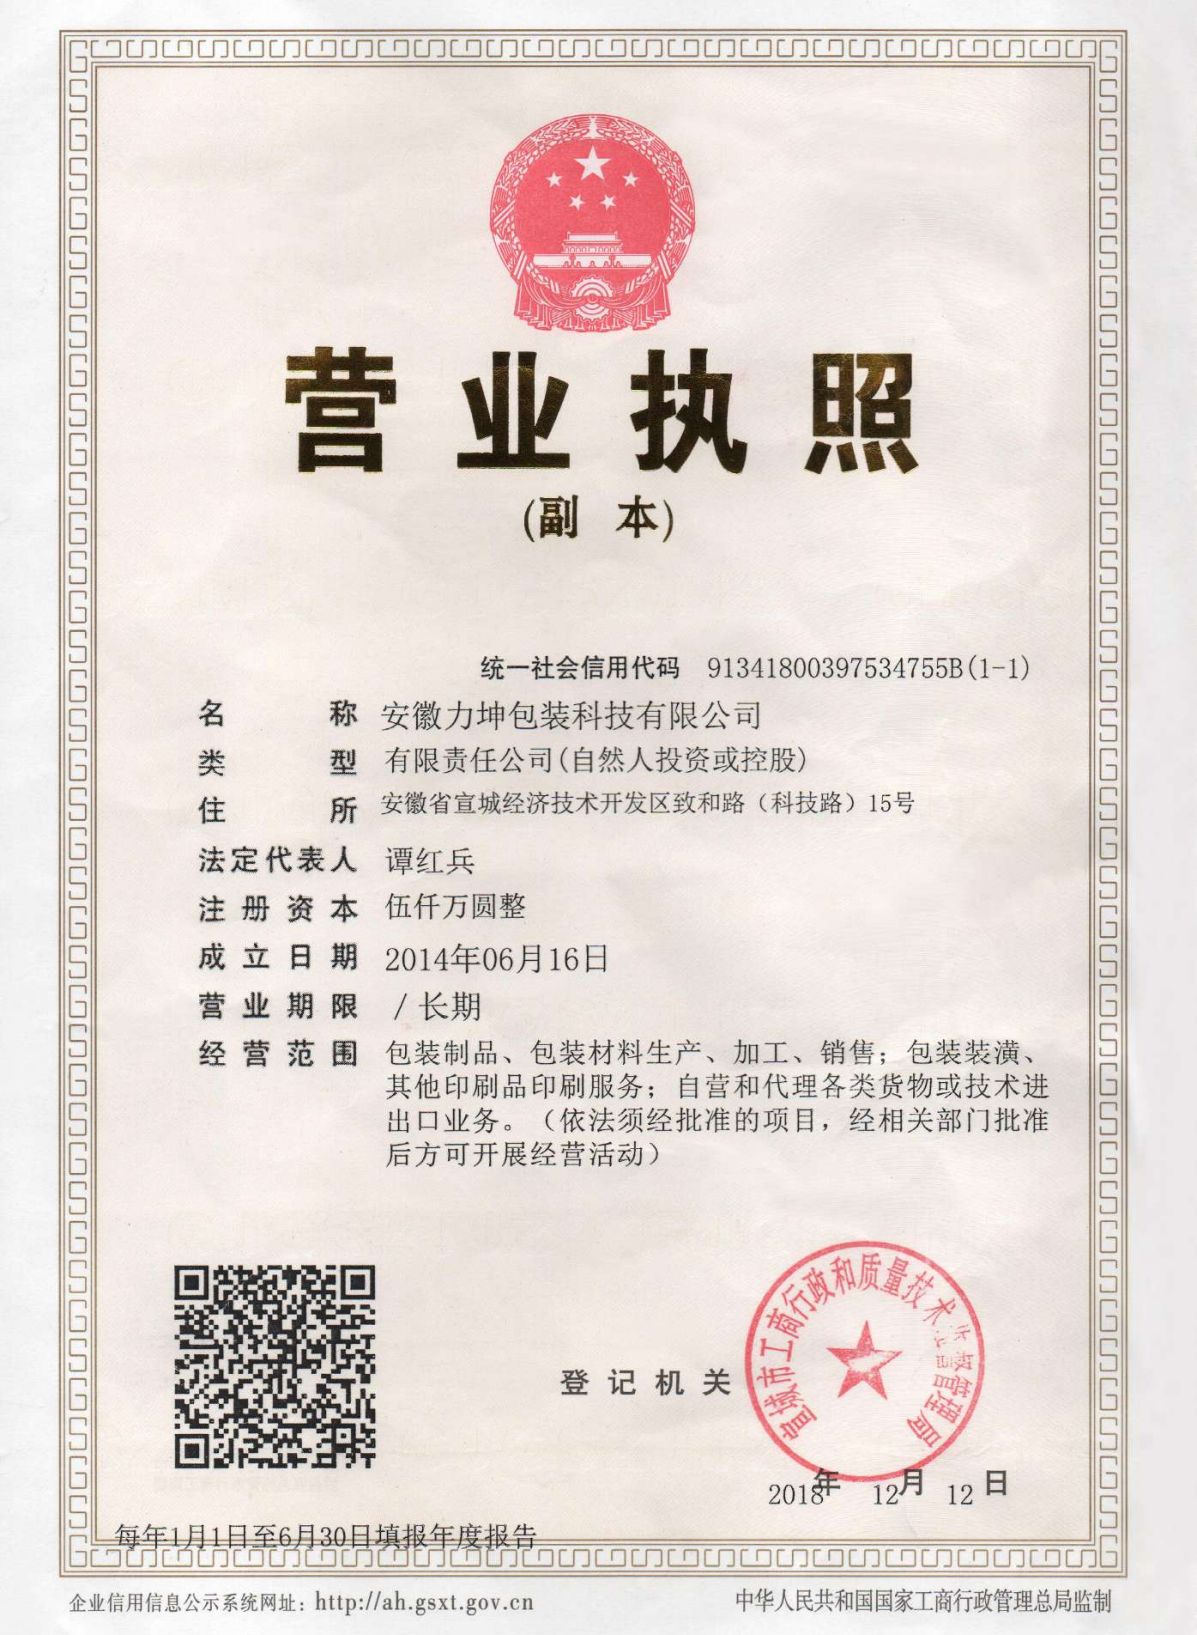 certifikat (2)